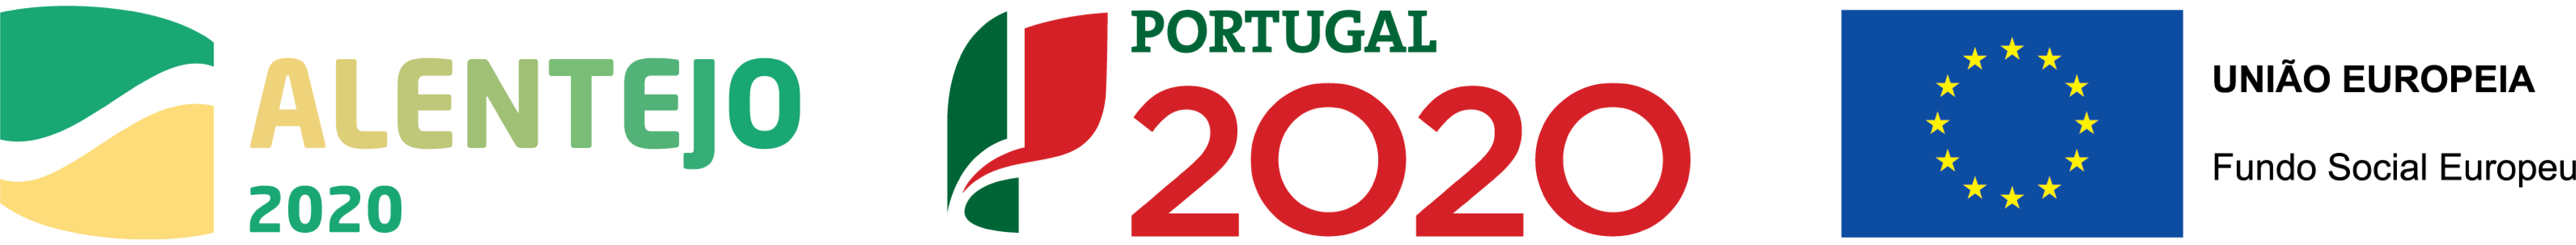 Financiamento Portugal 2020